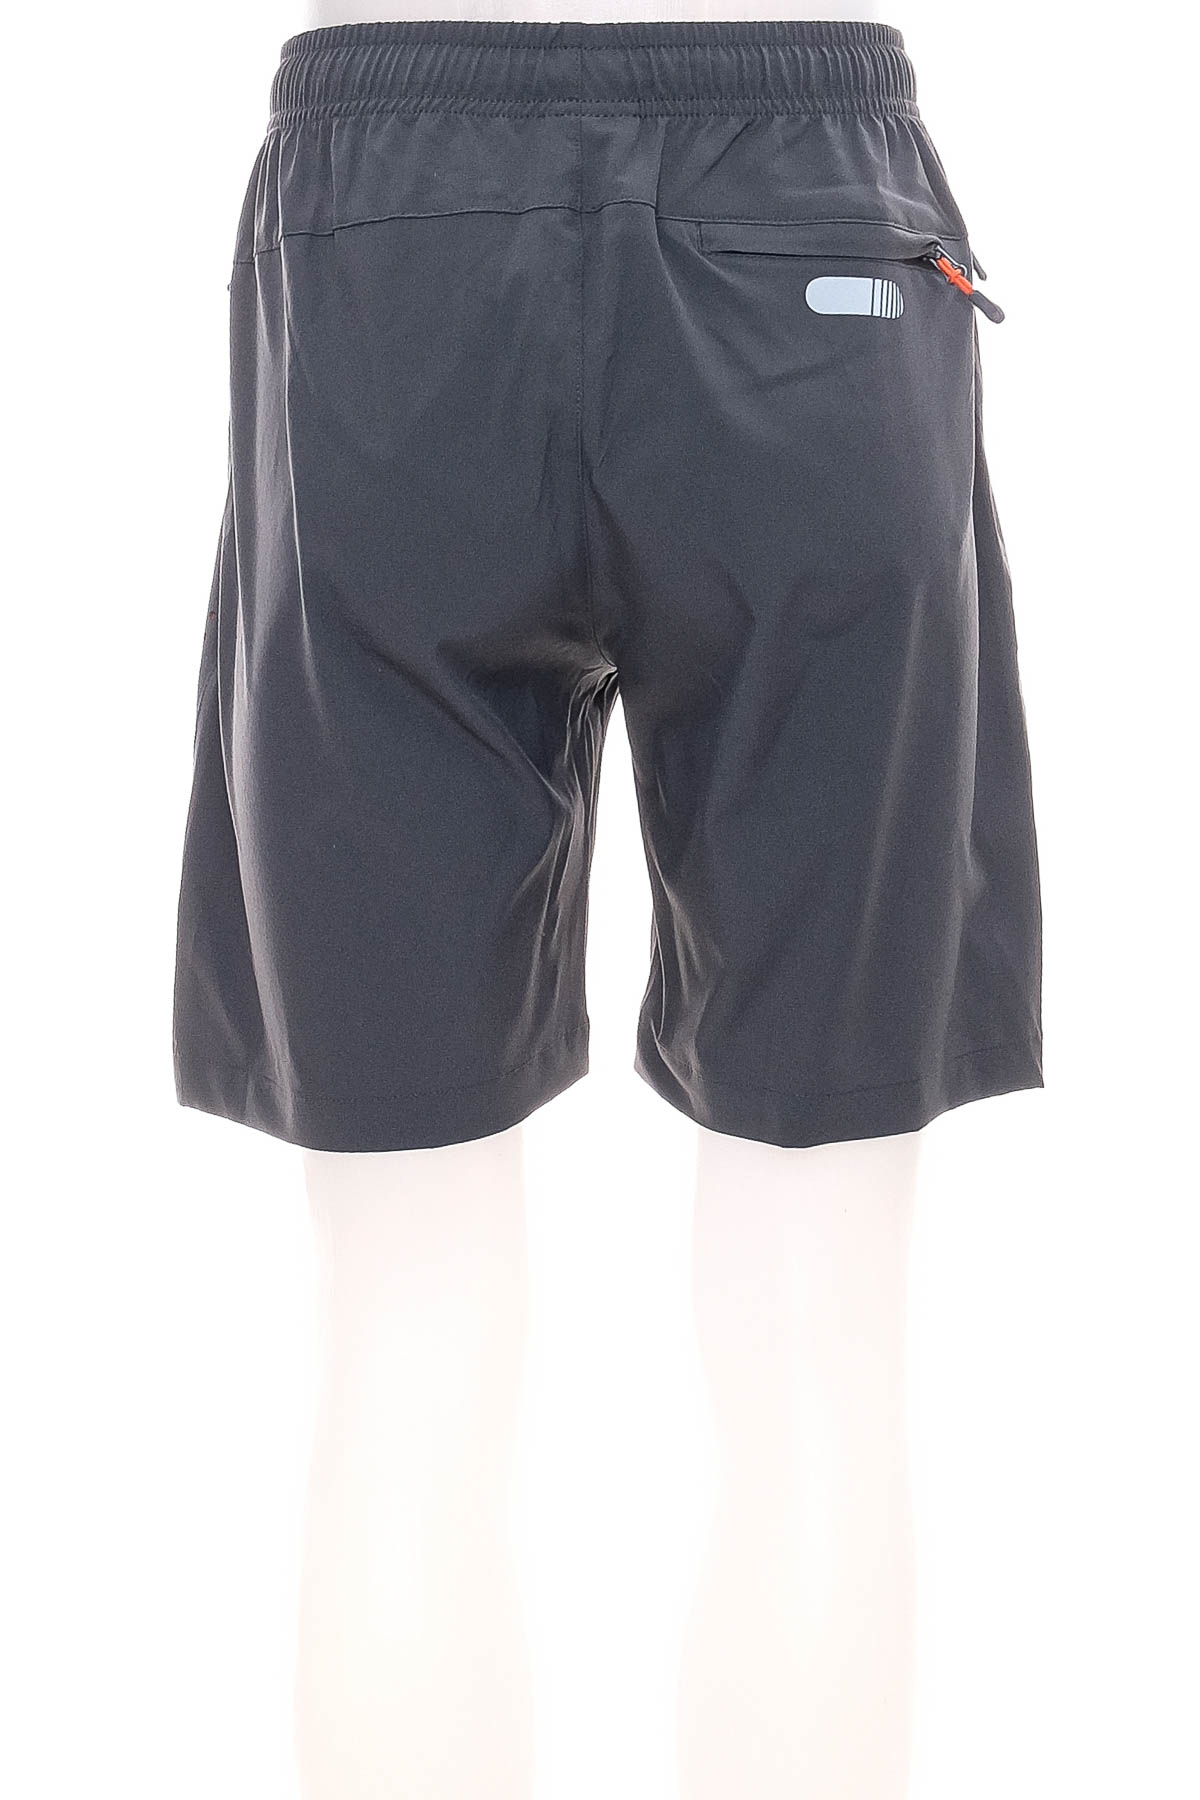 Men's shorts - BAYGE - 1